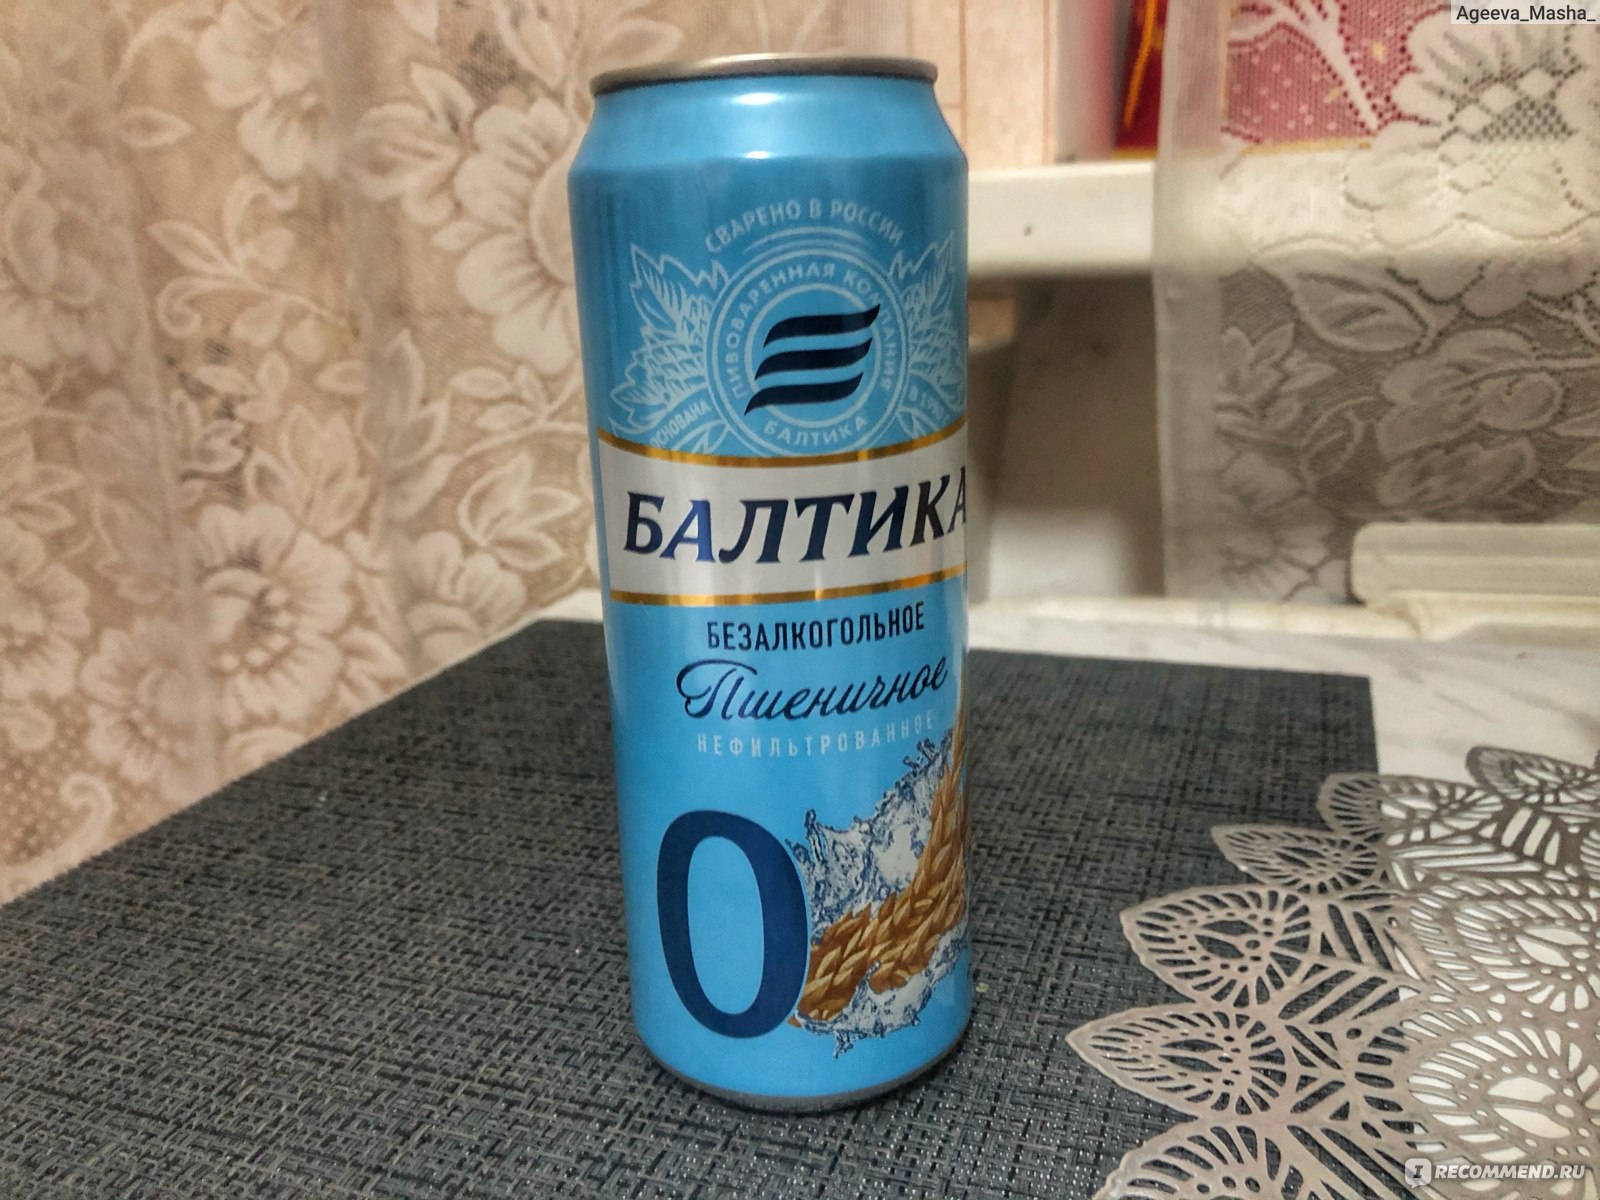 Балтика пшеничное нефильтрованное. Пиво Балтика 0 безалкогольное пшеничное. Пиво Балтика безалкогольное нефильтрованное. Пиво Балтика 0 пшеничное нефильтрованное. Балтика нулевка пшеничное.